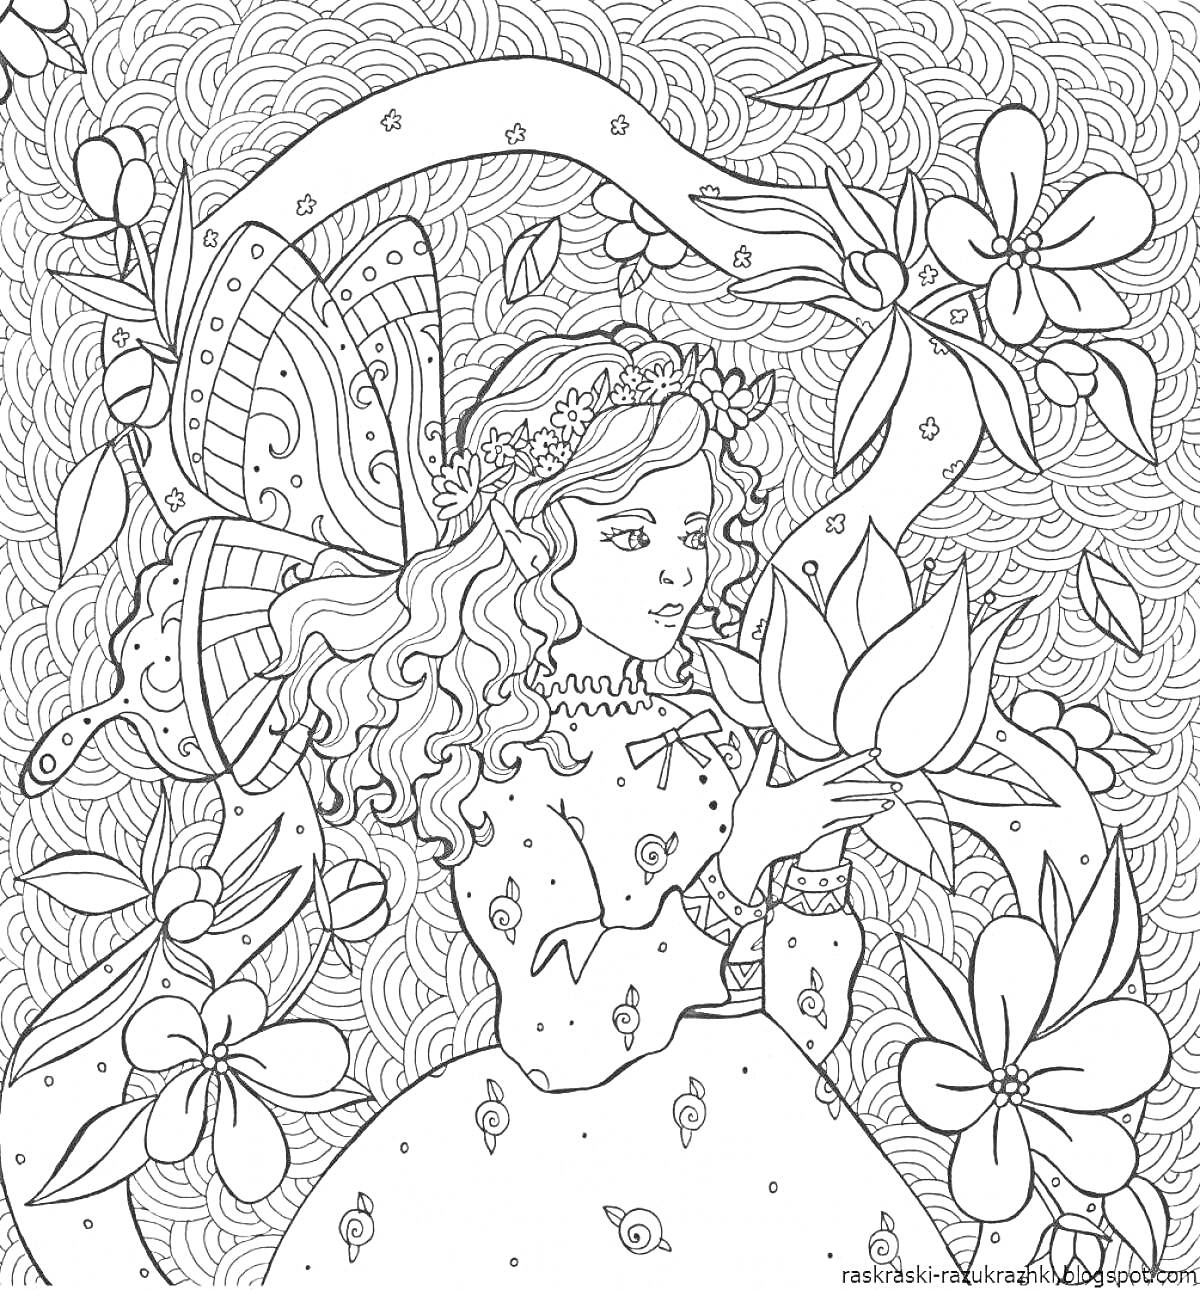 Раскраска Фея среди цветов с бабочкой и цветком в руках